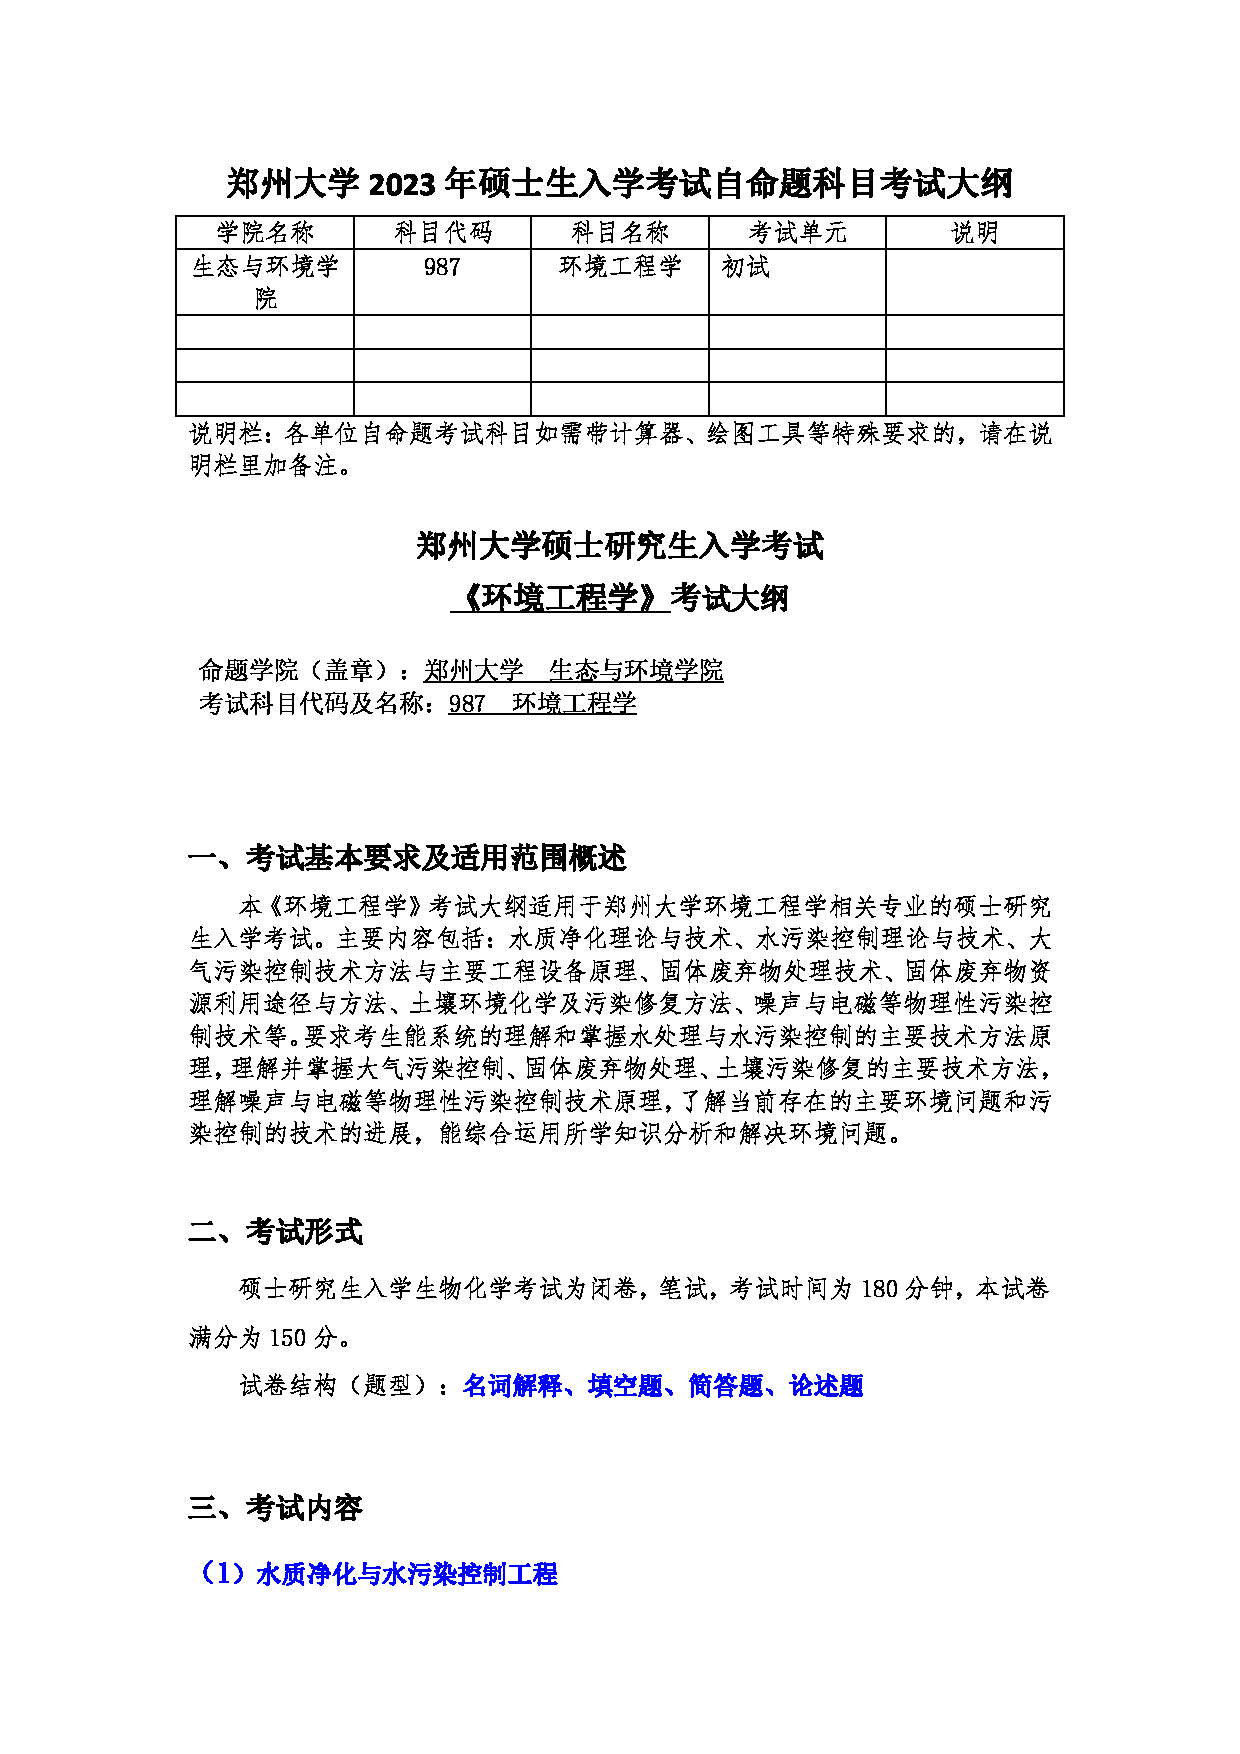 2023考研大纲：郑州大学2023年考研自命题科目 987环境工程学 (1) 考试大纲第1页